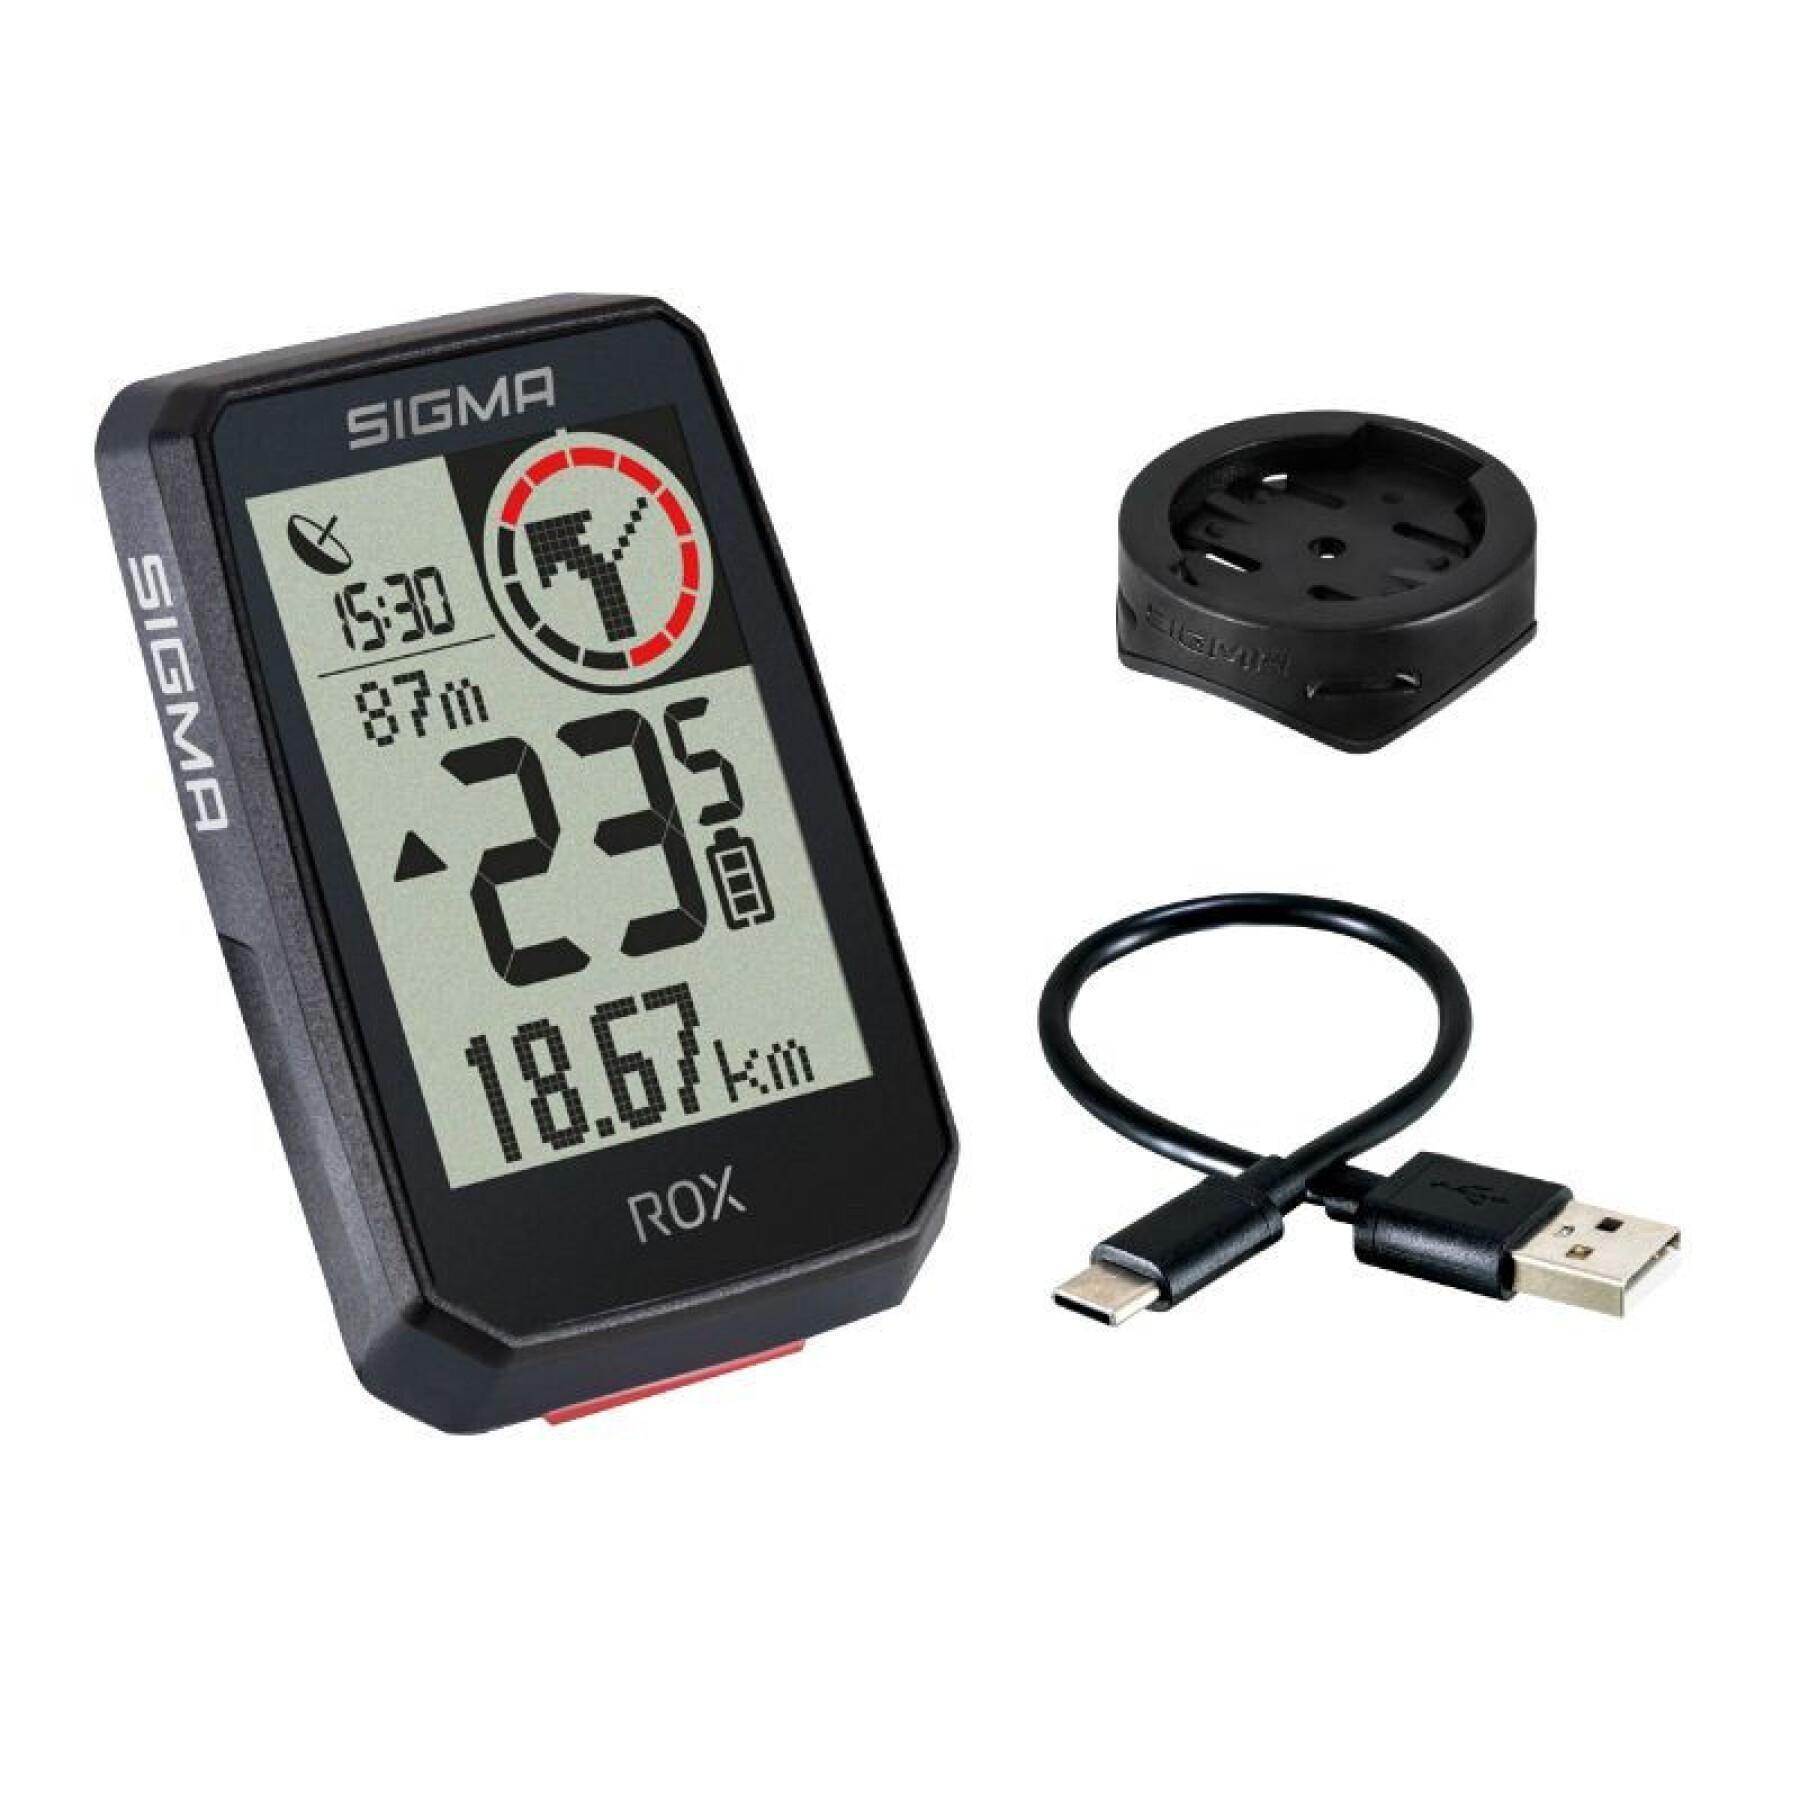 Contador Sigma ROX2.0 GPS